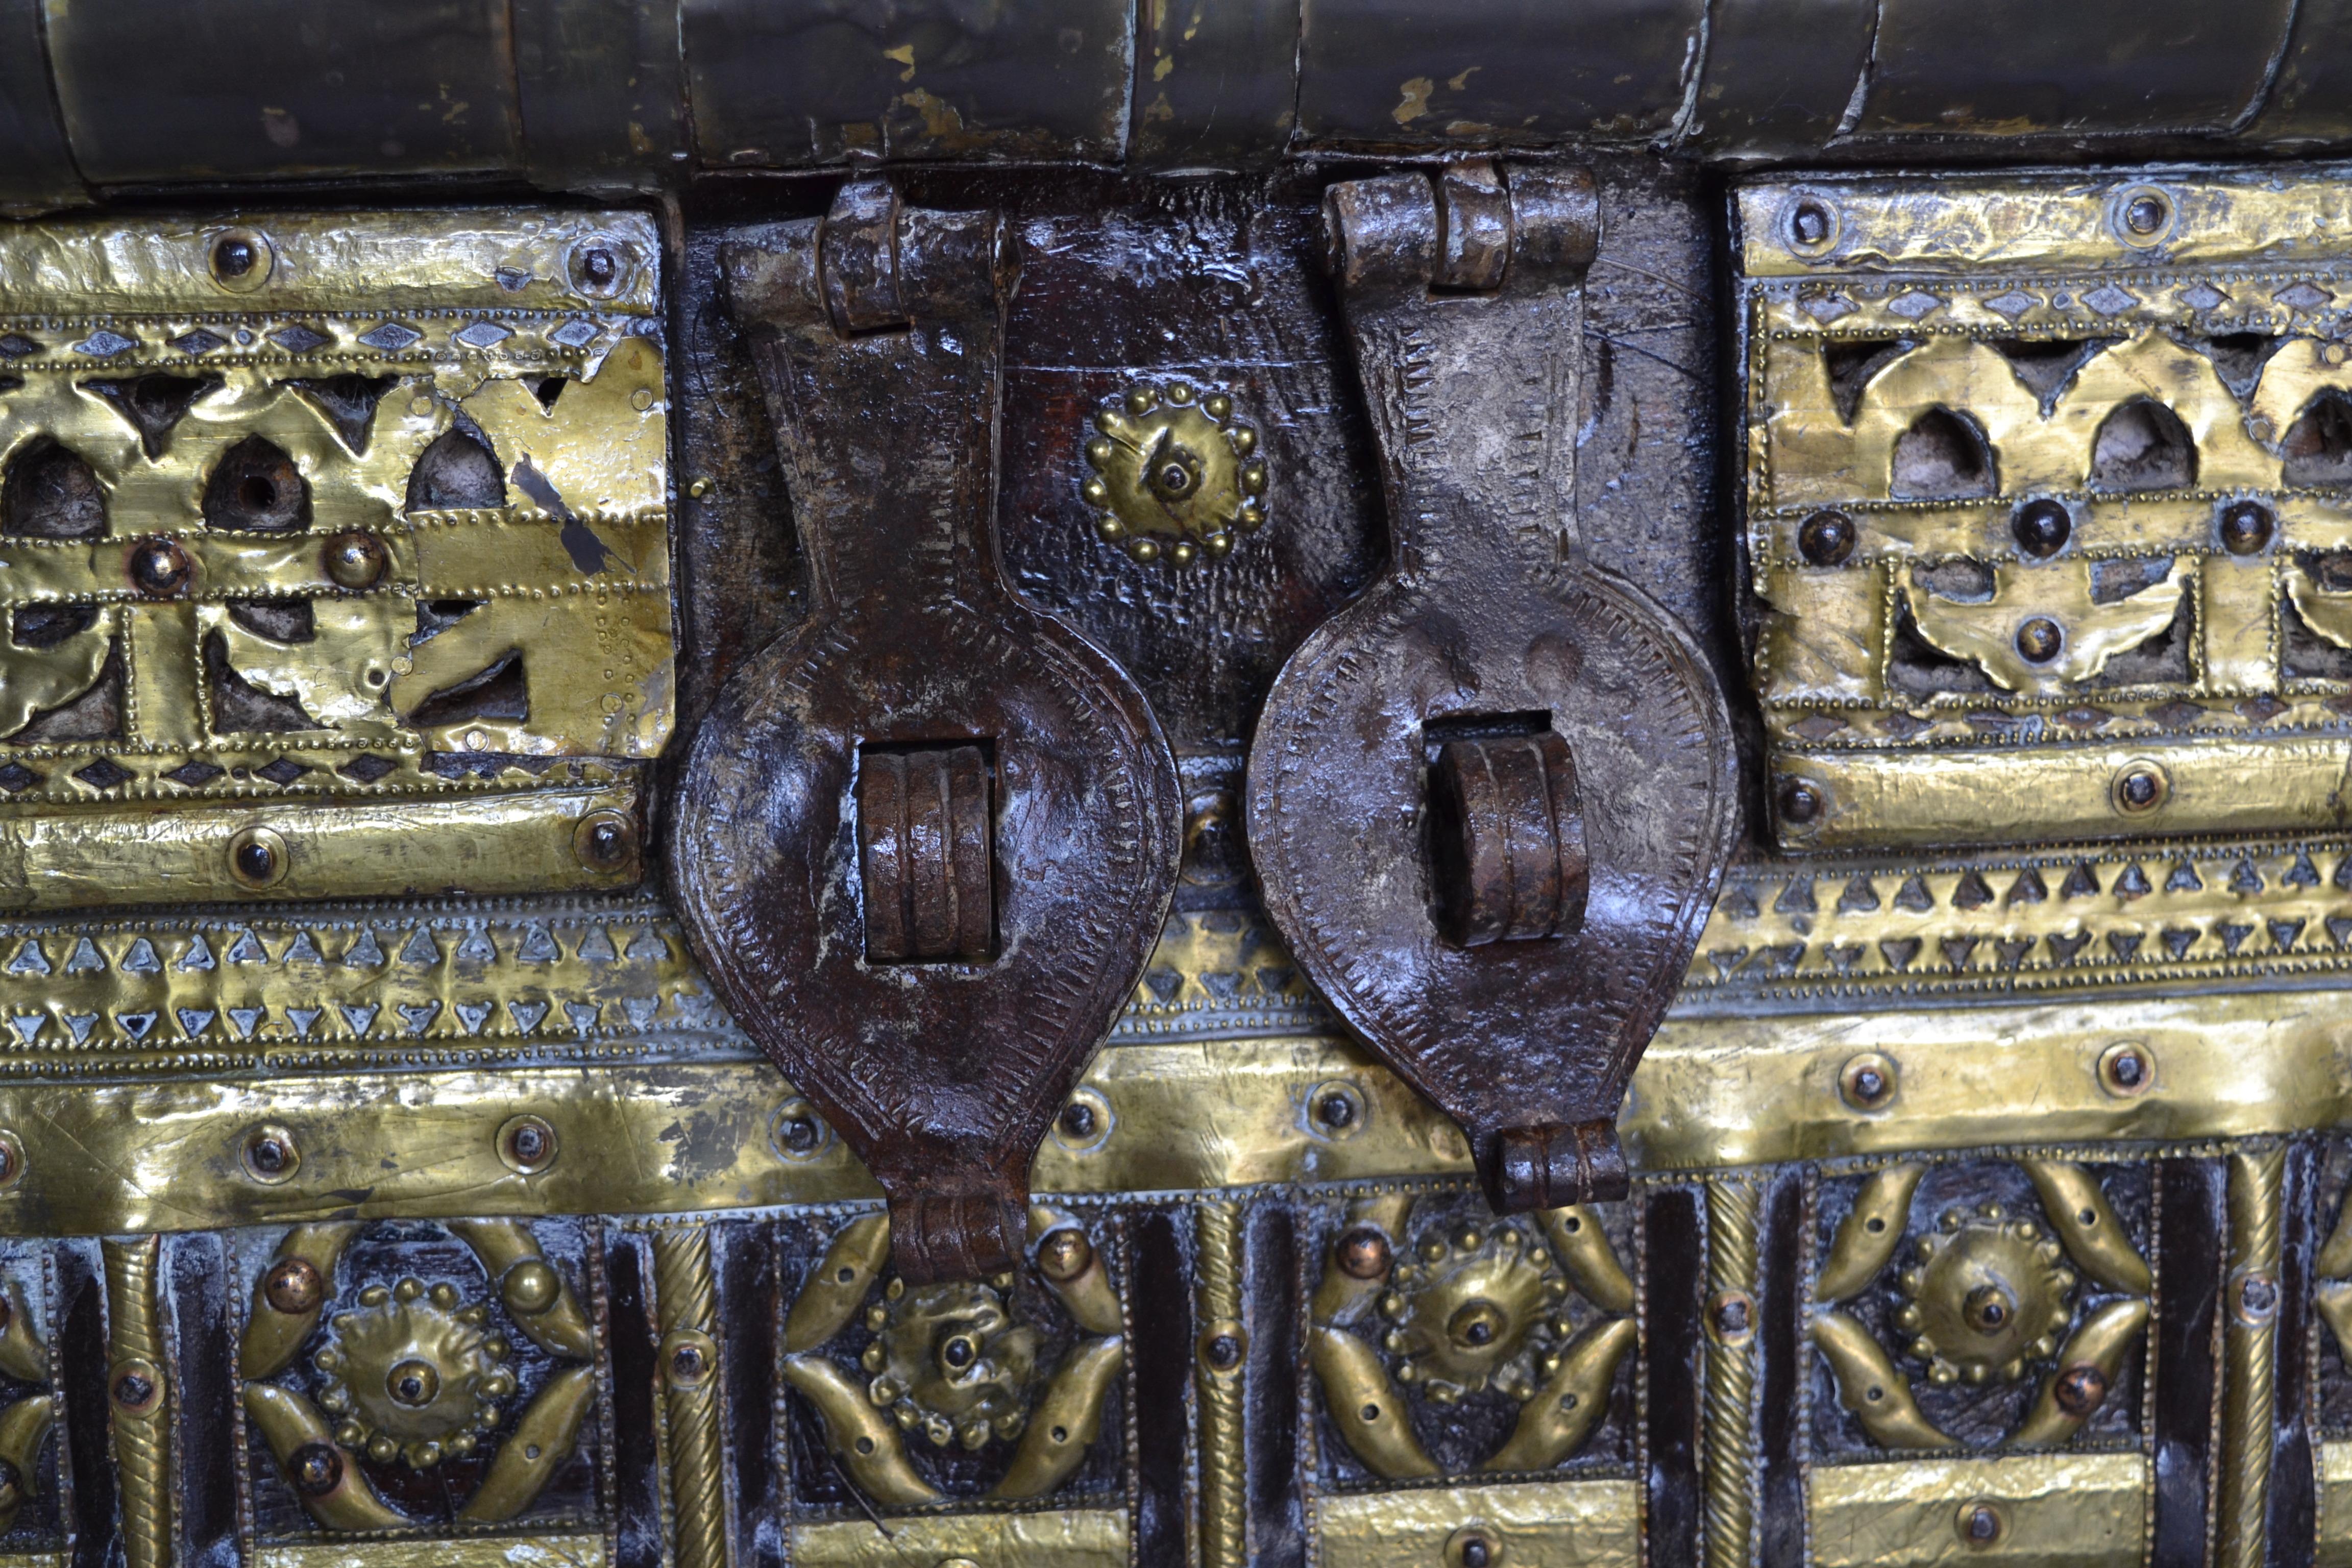 Un fabuleux exemple de grand coffre de palais syrien, avec du fer battu à la main et du bronze doré forgé, attaché à un coffre en noyer massif. Ces coffres se trouvaient généralement dans les palais syriens, ils étaient cachés sous les roues des